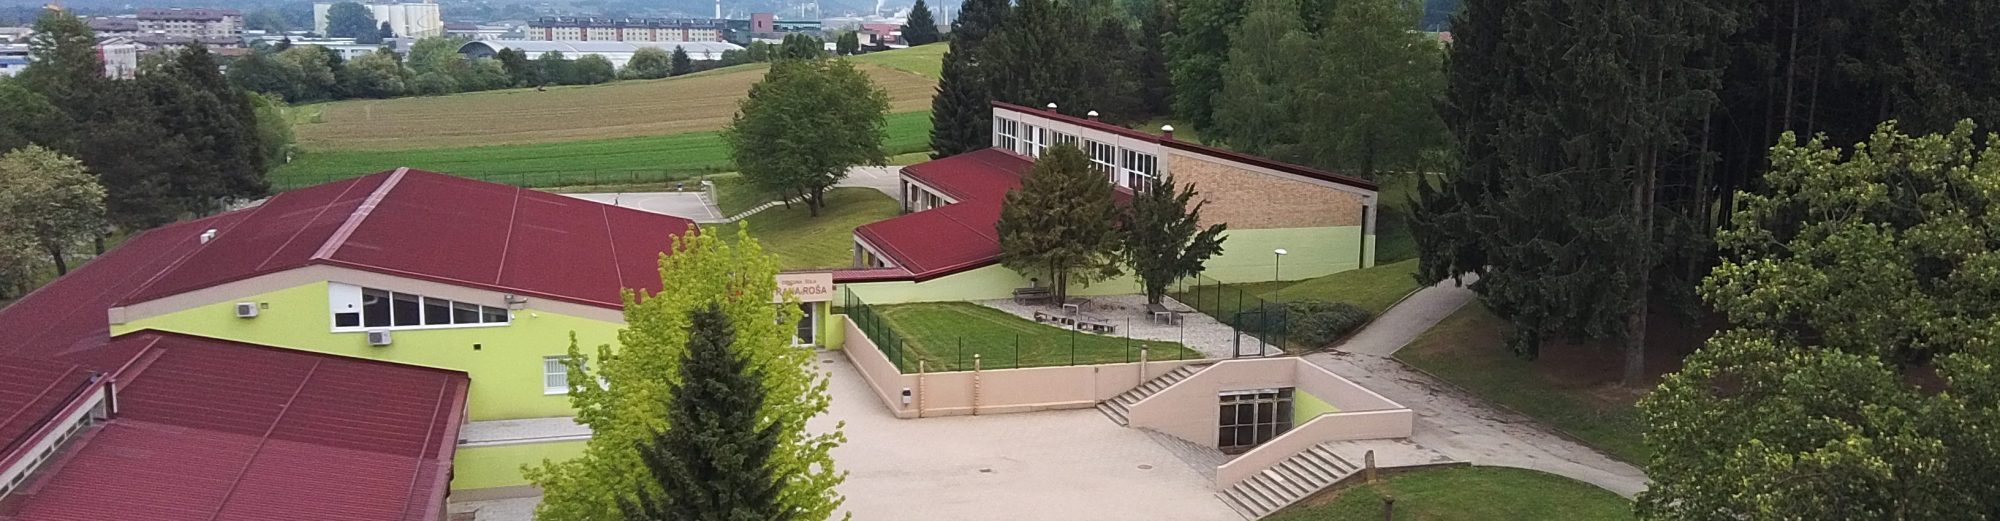 Osnovna šola Frana Roša